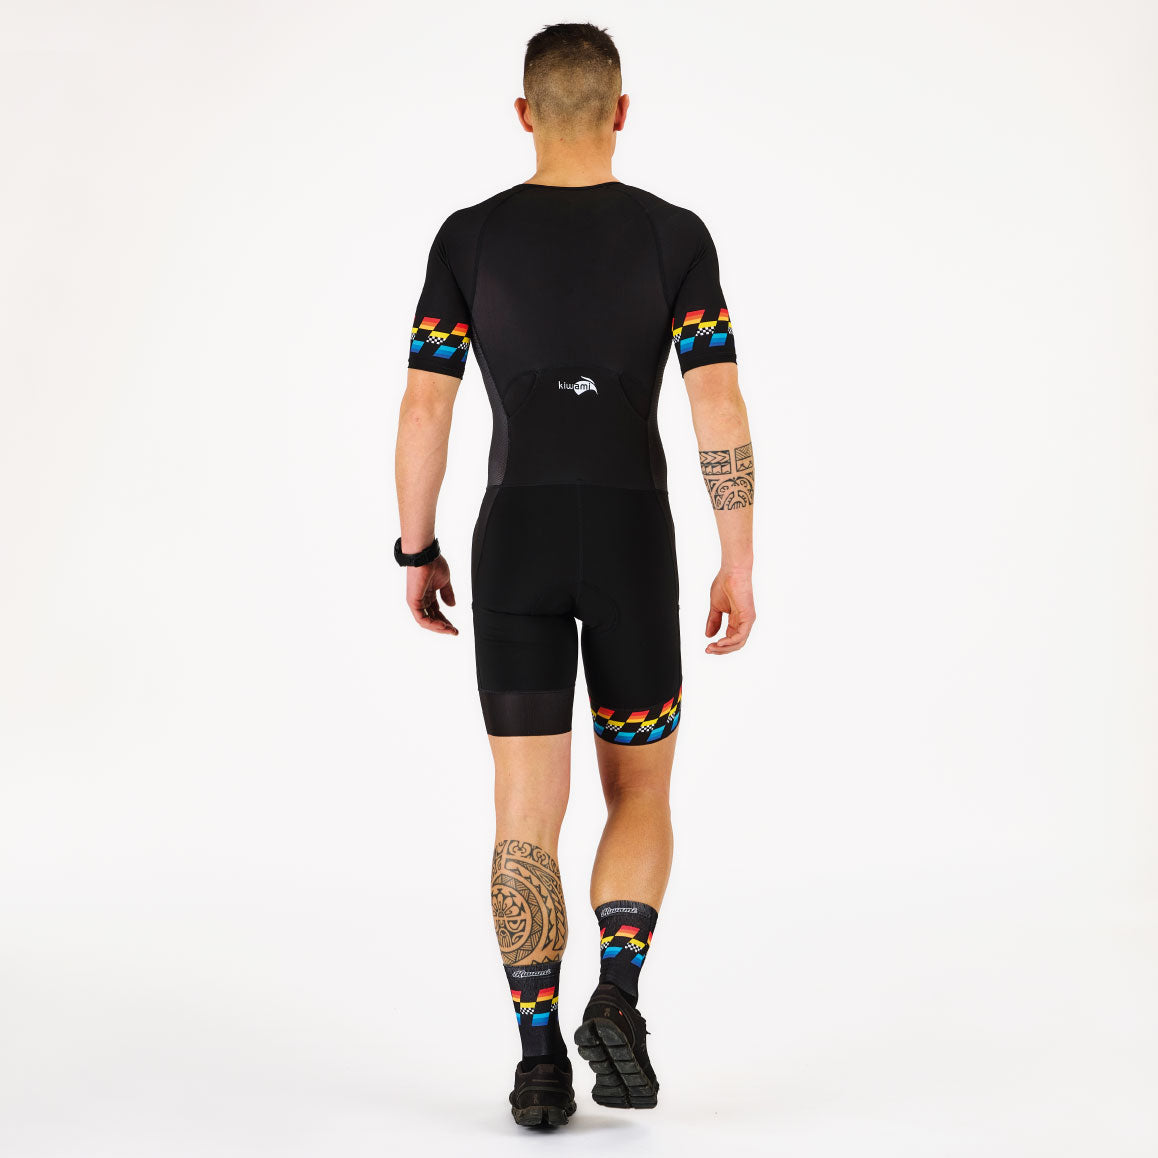 Combinaison trifonction kiwami sports longue distance triathlon S M L poches ergonomiques pour barres énergétiques.